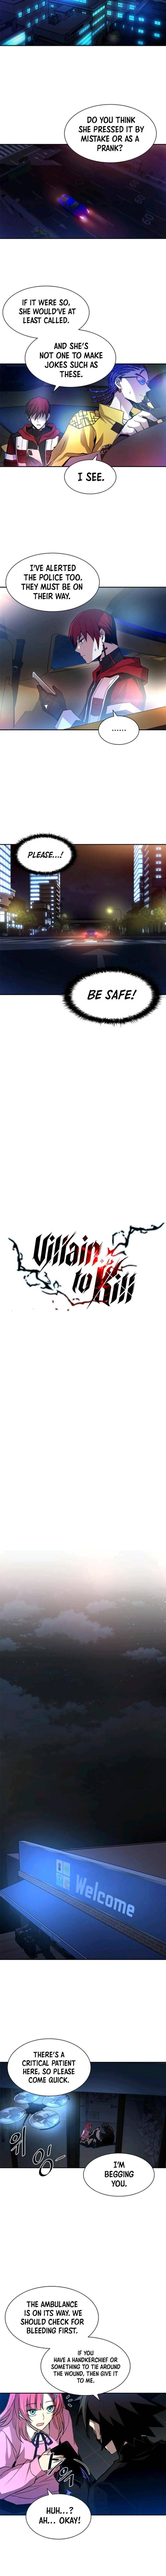 villain_to_kill_17_3